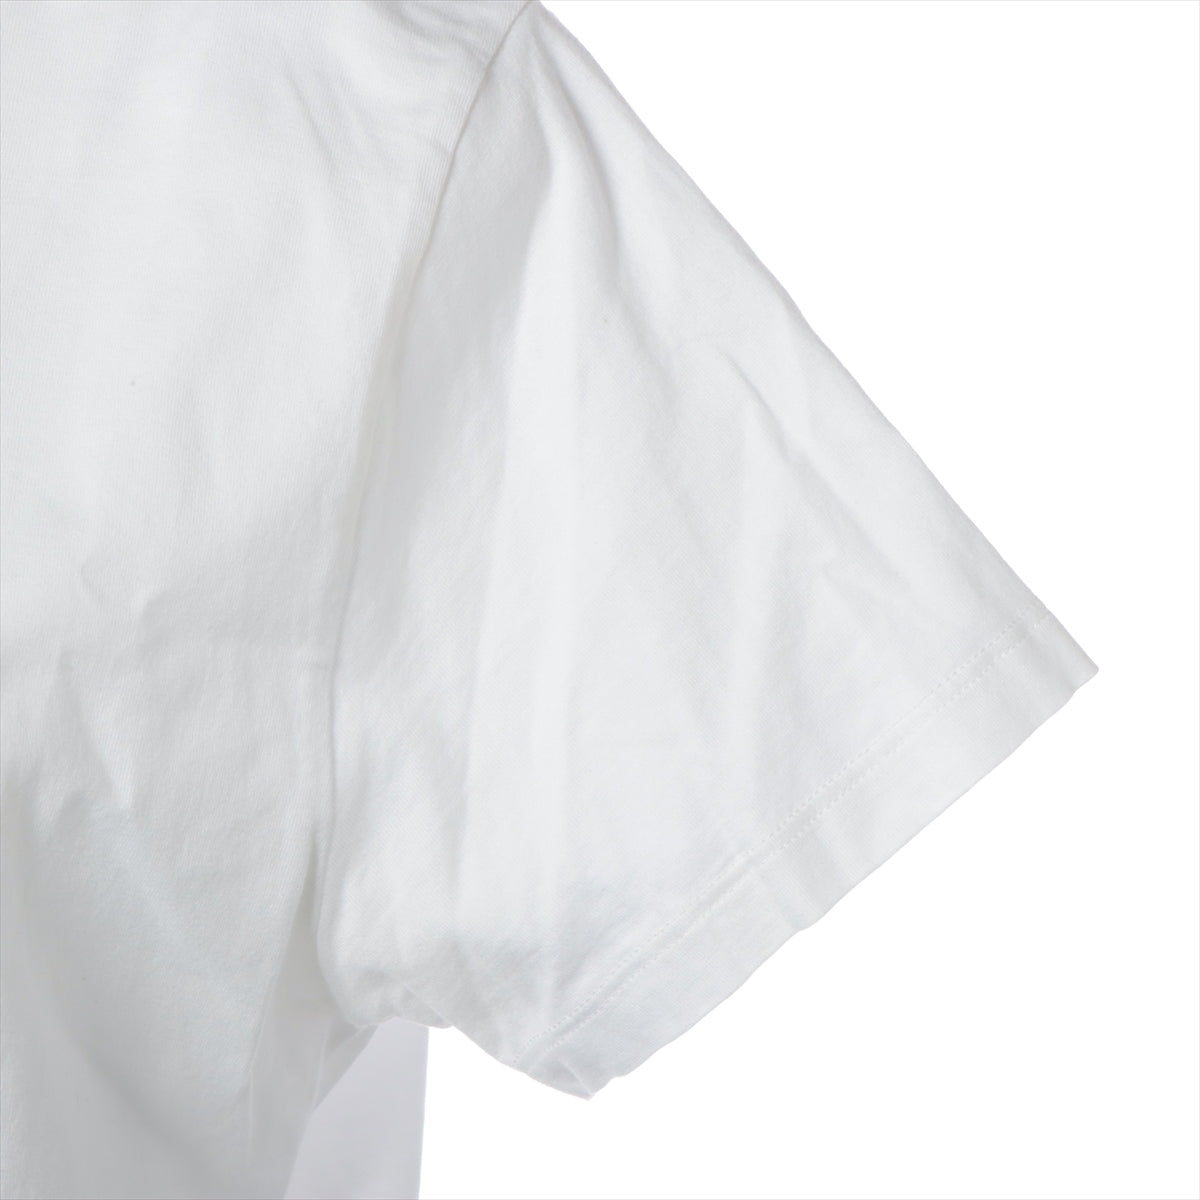 CELINE Cotton T-shirt L Ladies' White  2X351501F